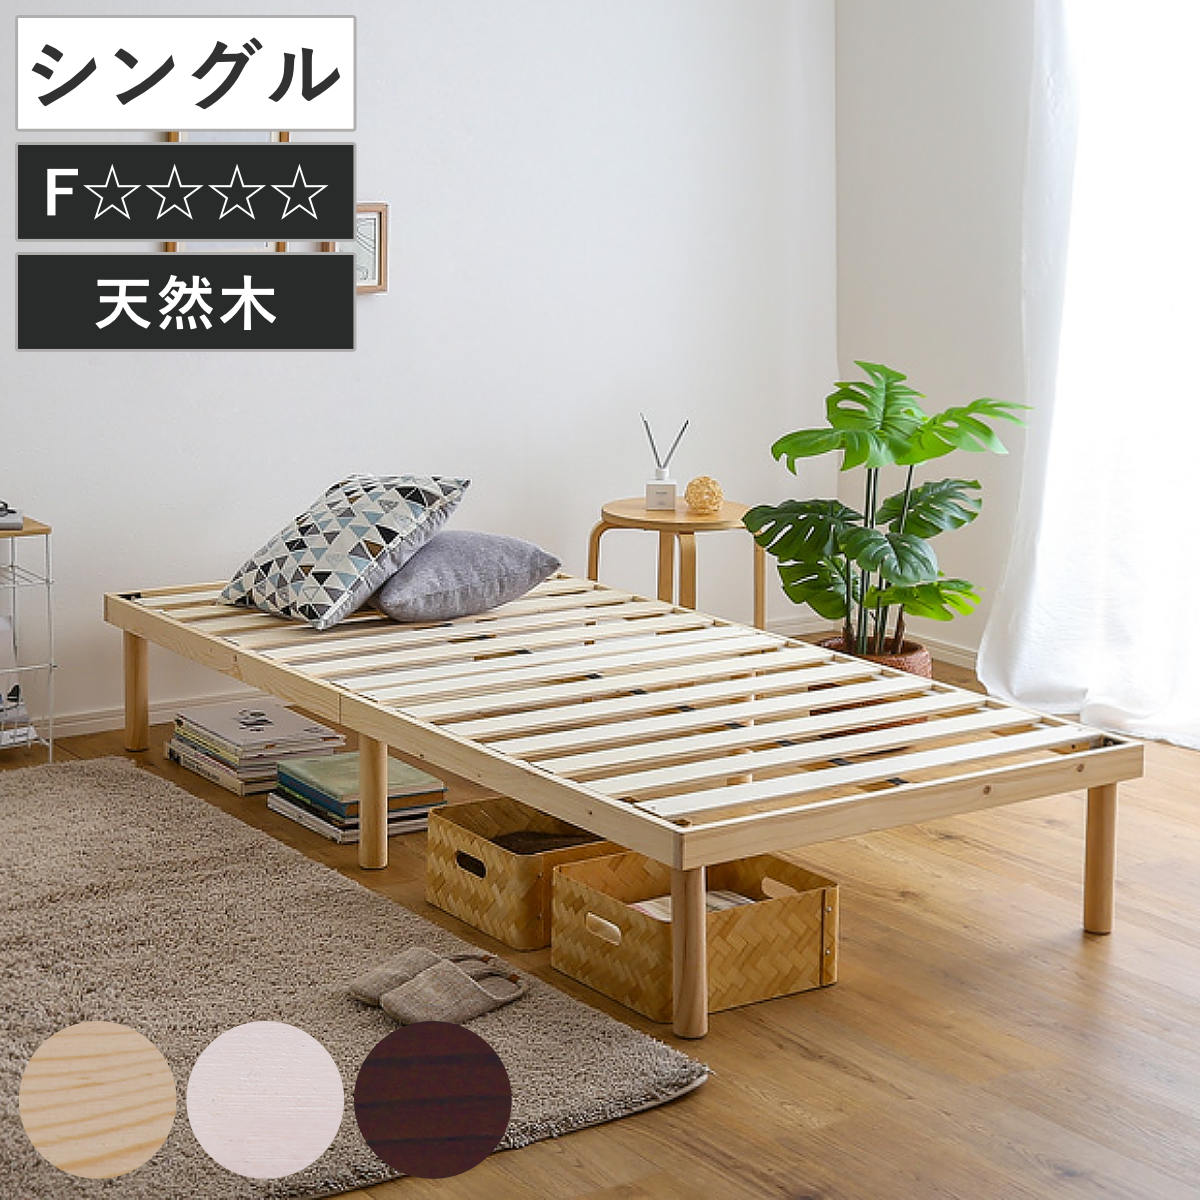 ARP2 パイン材ベッド シングル フレームのみ 天然木 収納 すのこベッド 